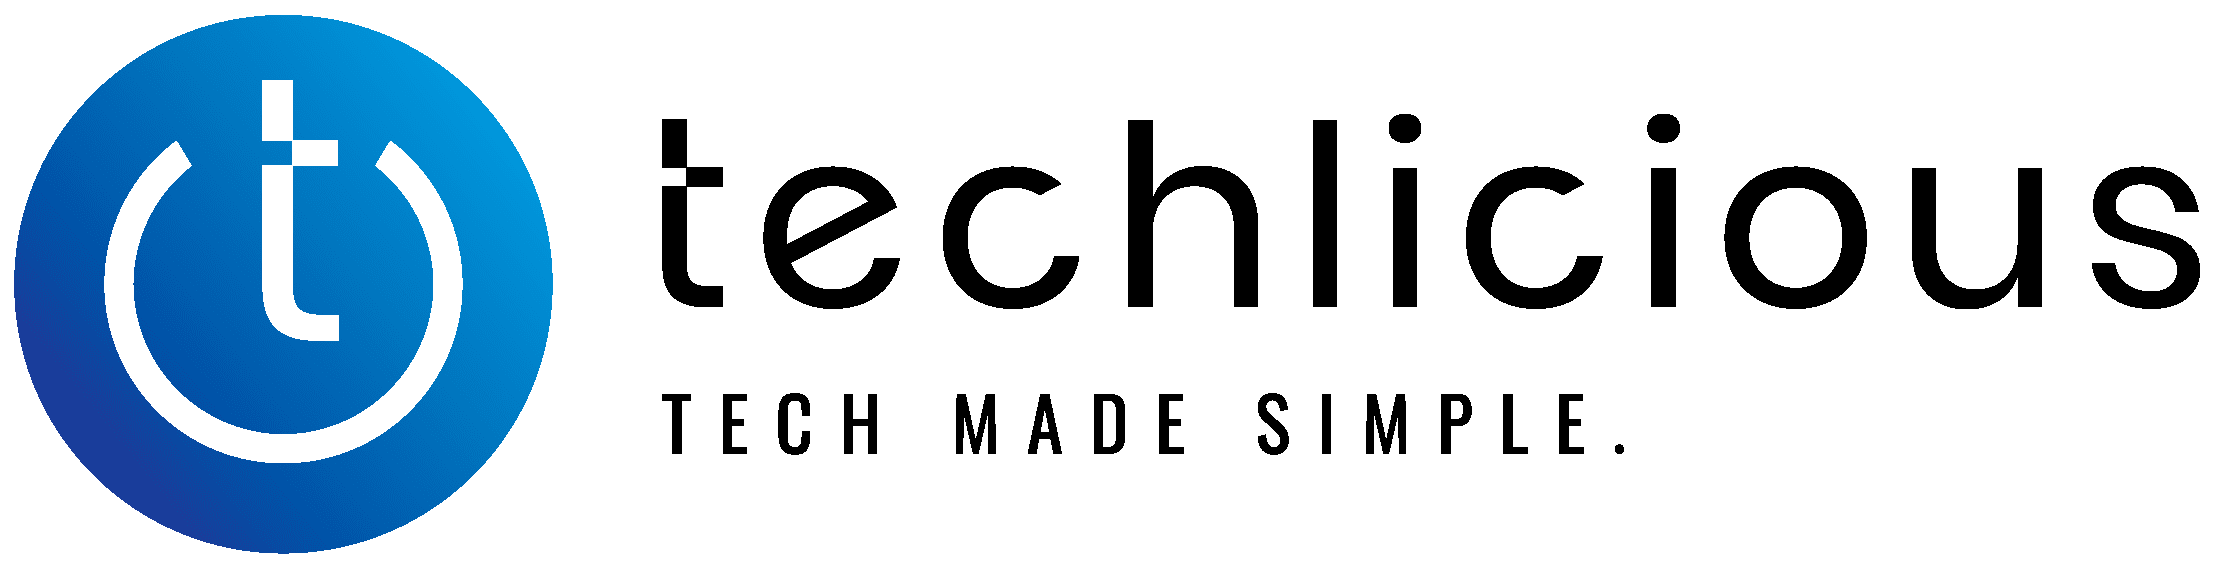 Techlicious logo